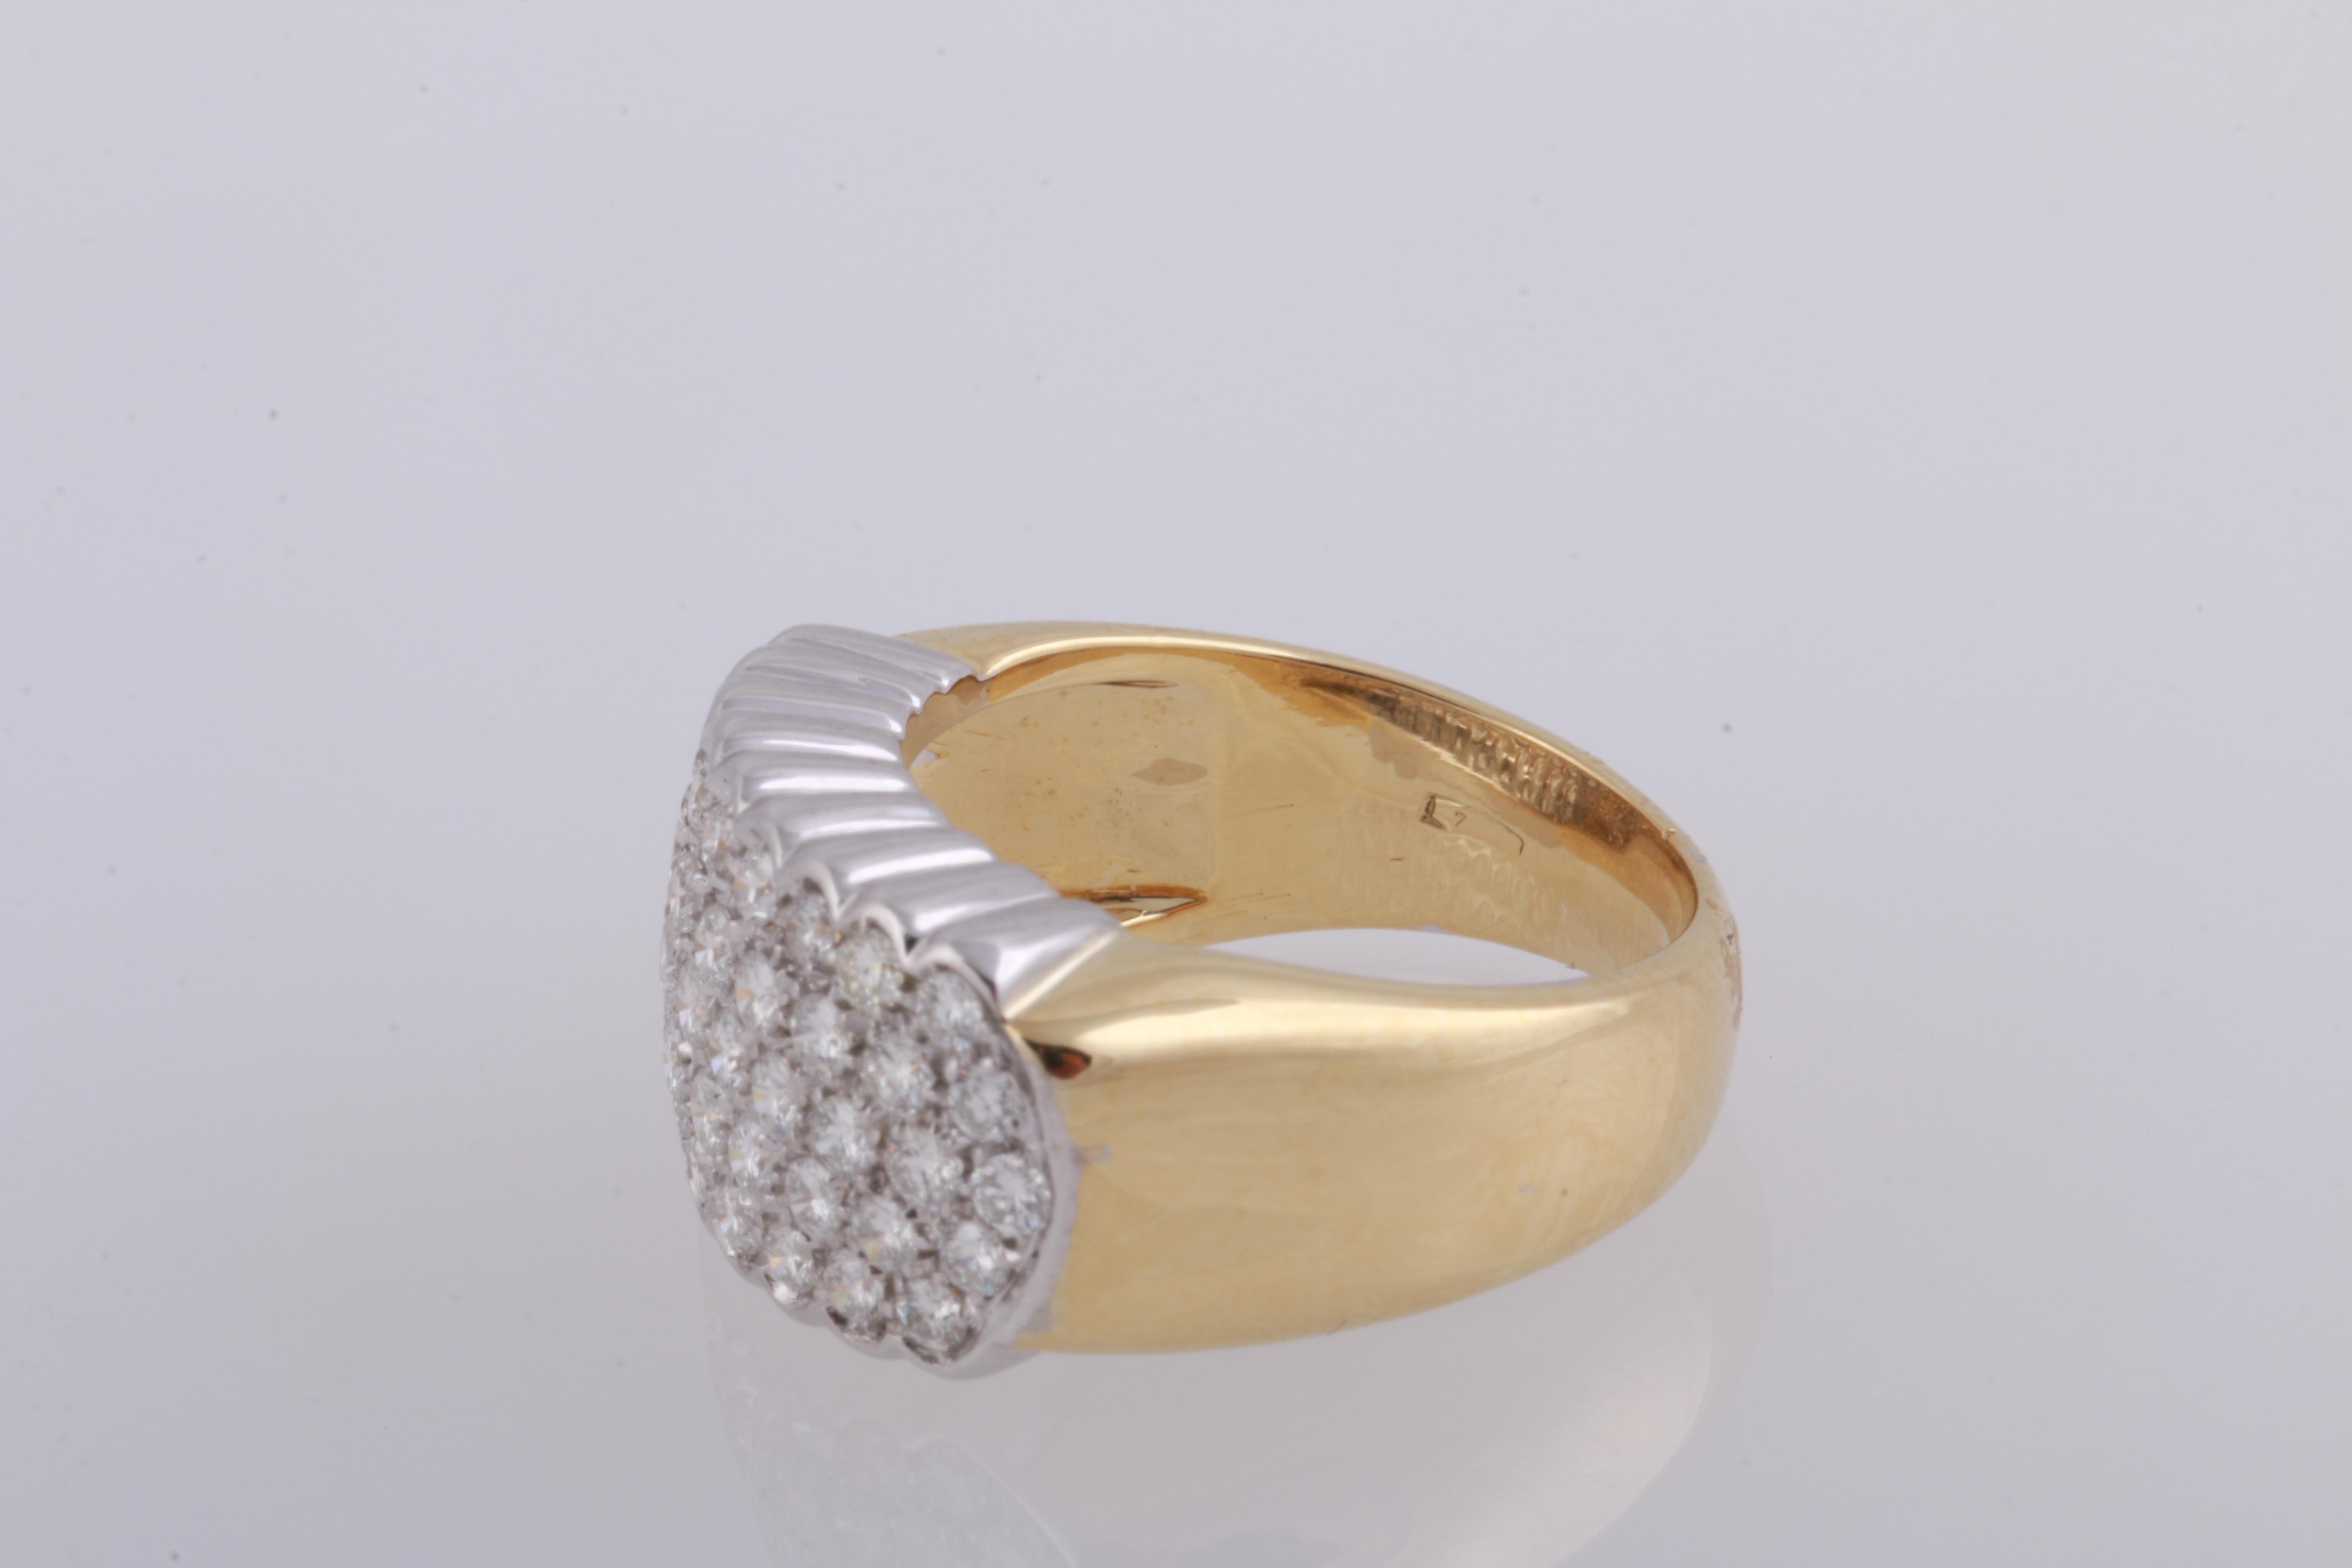 0.70 Carat Pavé Set Diamond Band Ring in 18 Karat Yellow and White Gold 1